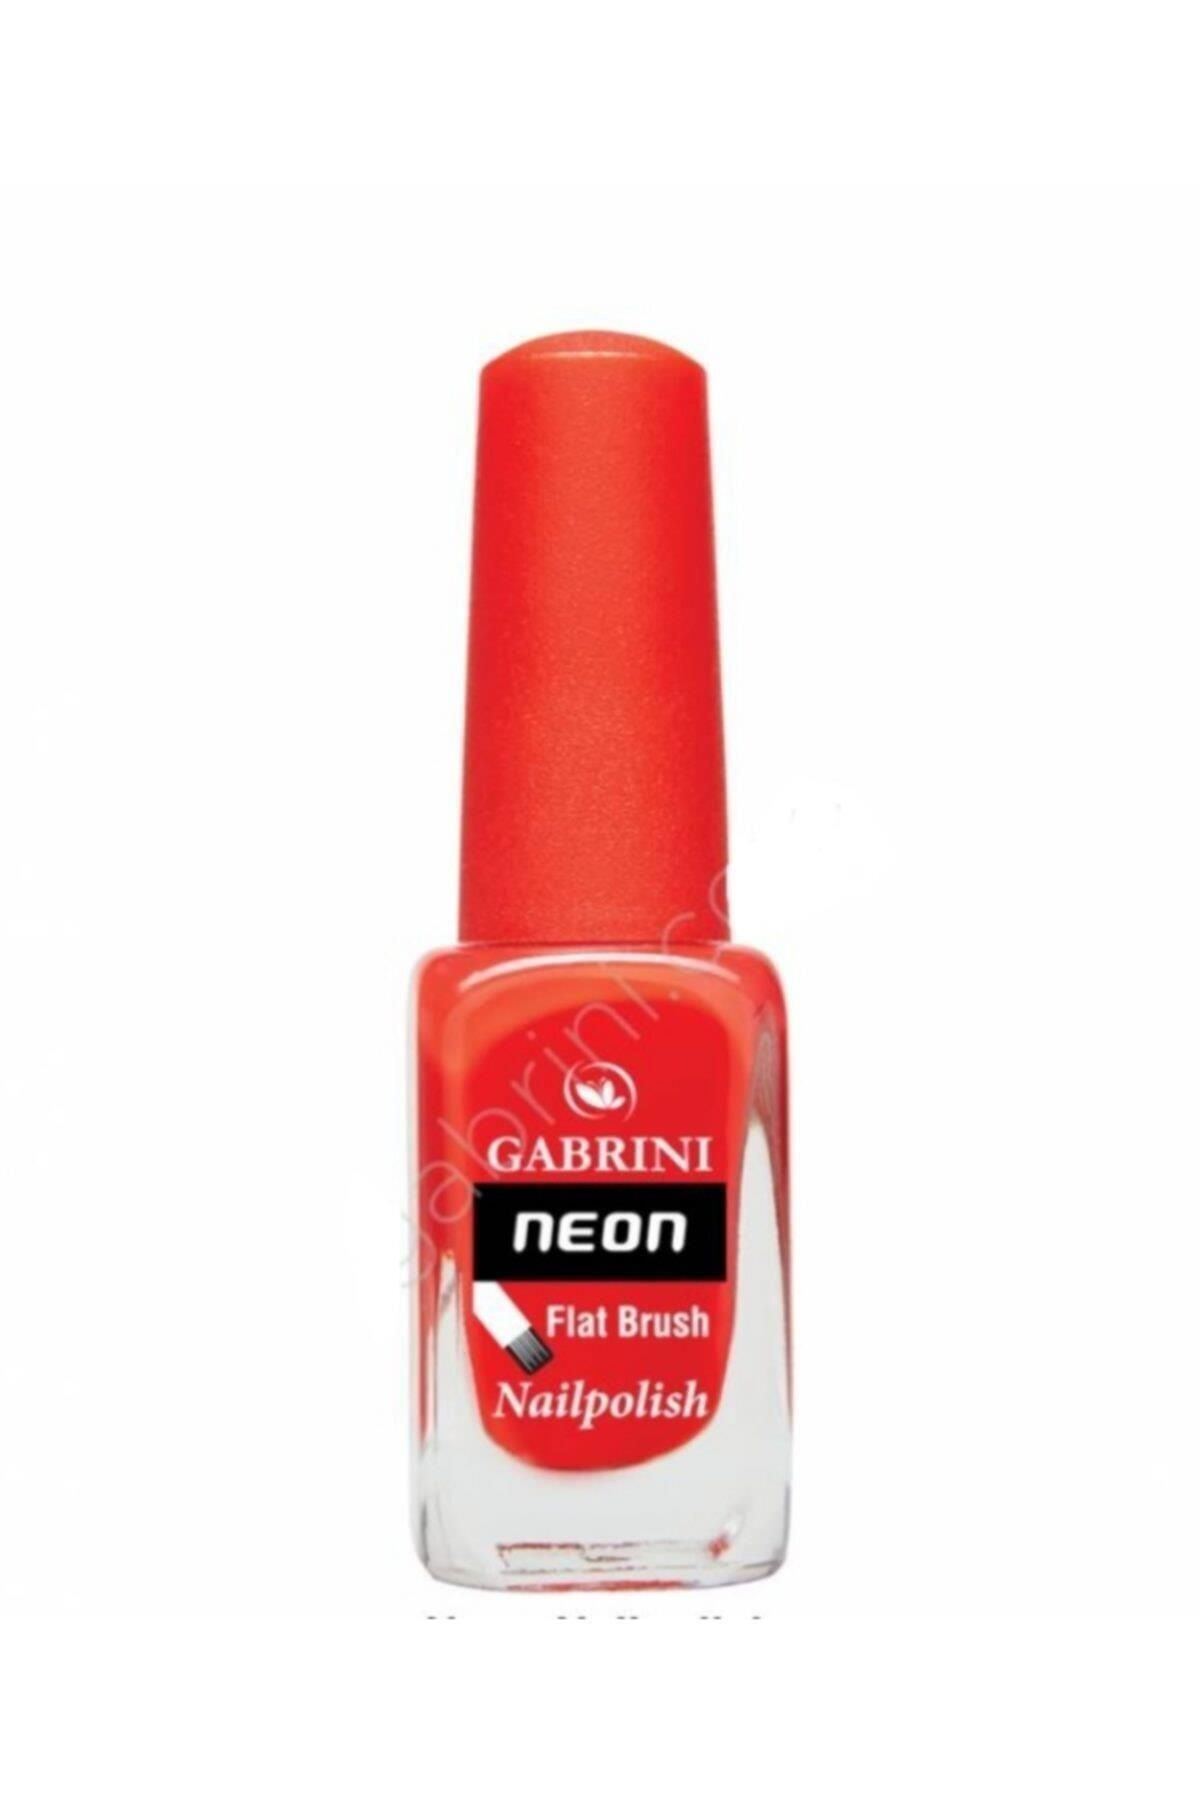 Gabrini Neon Flat Brush Nailpolish N16